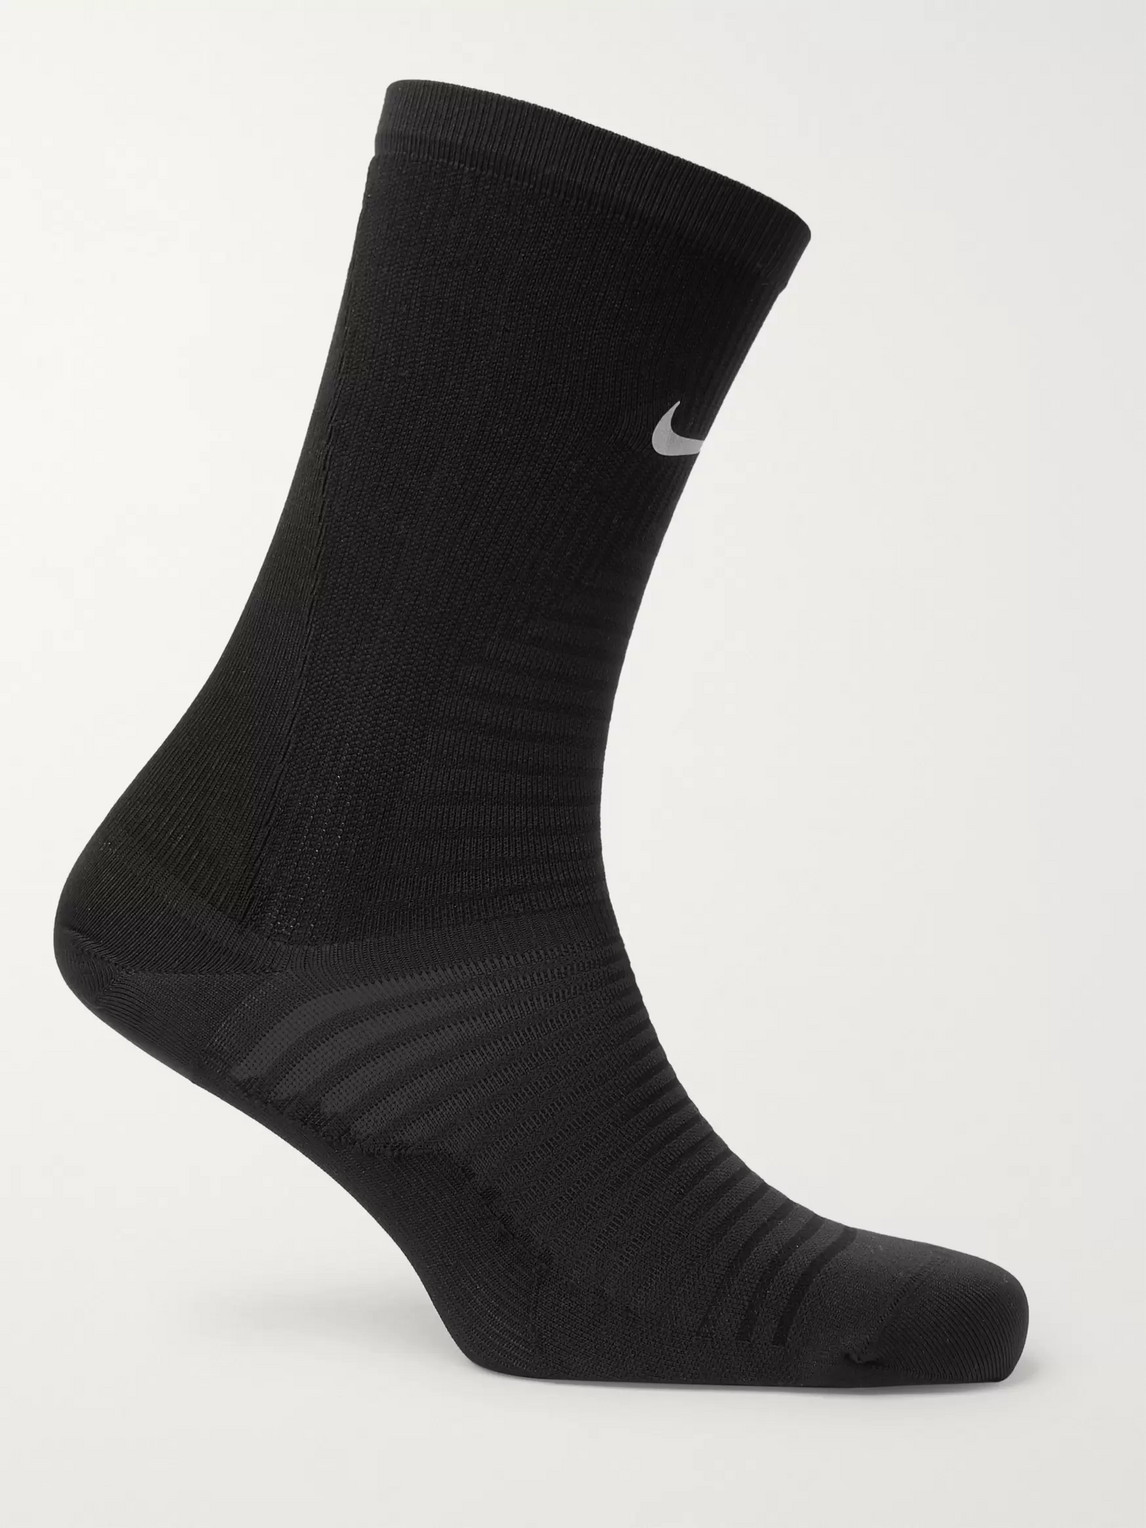 Nike Spark Lightweight Crew Running Socks In Black